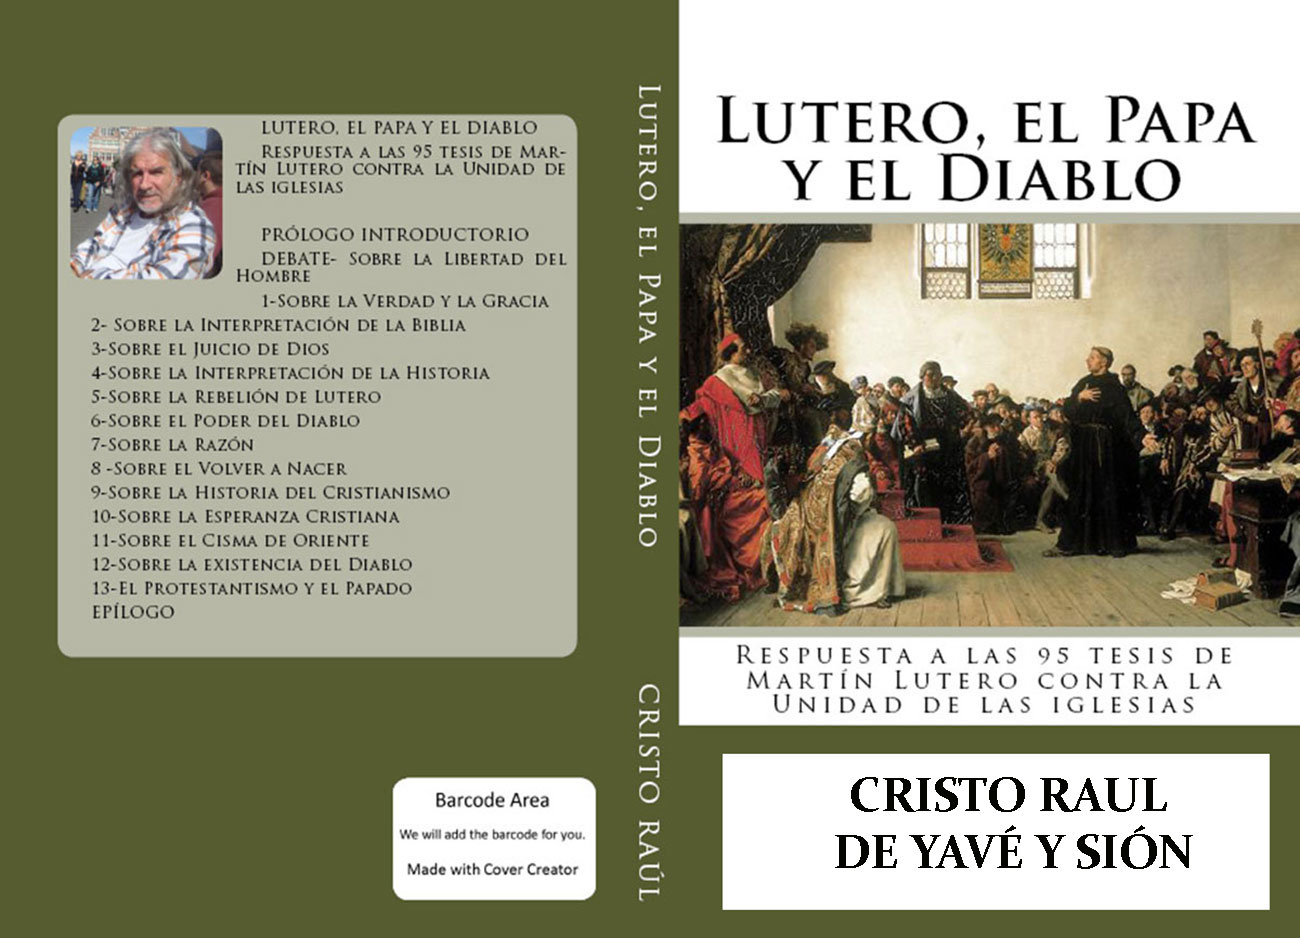 CR/editorial/LUTEROELPAPAYELDIABLO/LUTERO-EL-PAPA-Y-EL-DIABLO_LIBRO.html